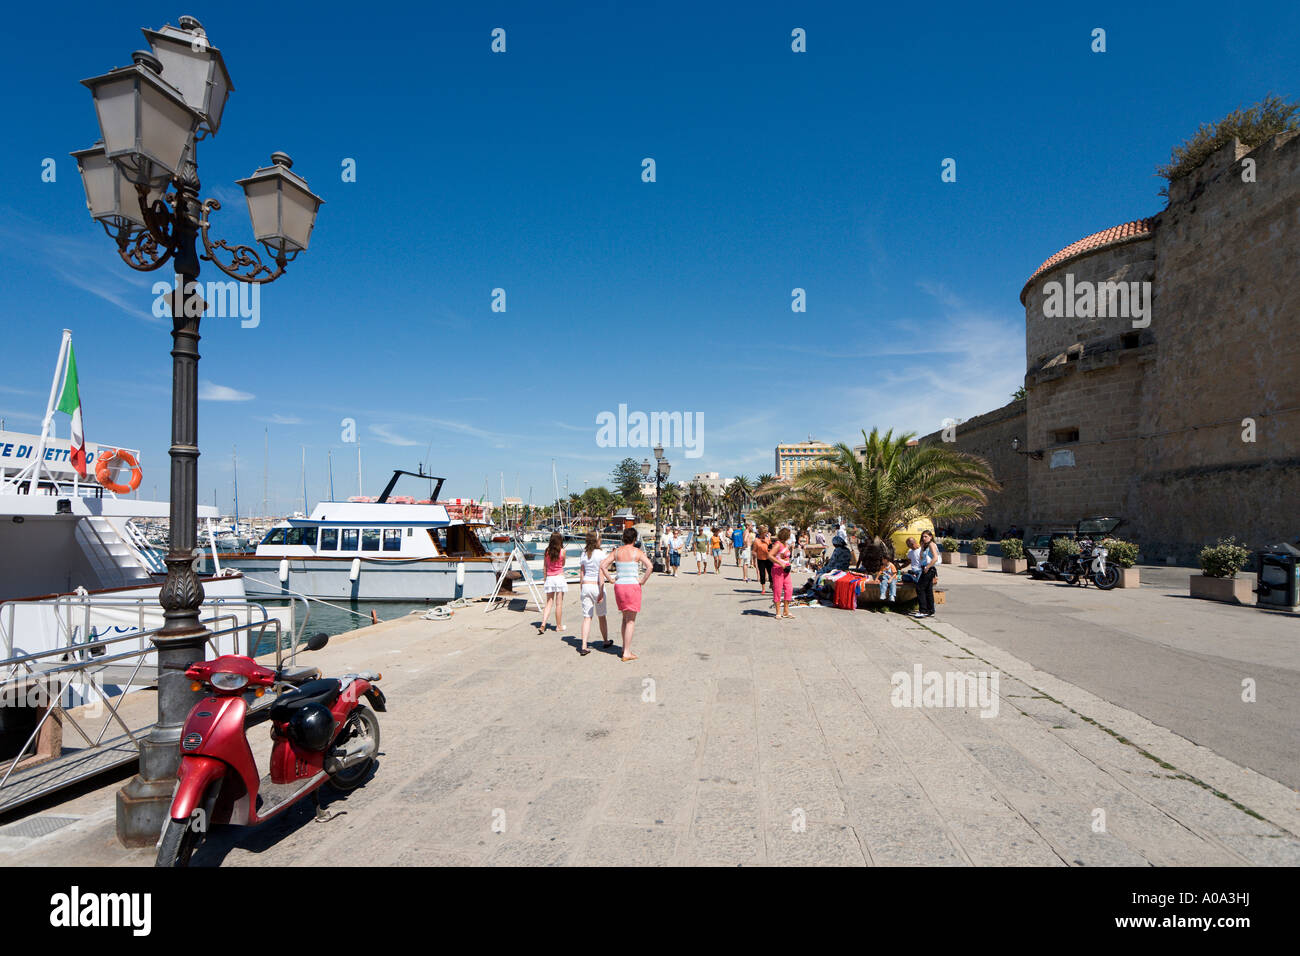 Promenade en bord de mer vers le port et les remparts de la vieille ville, Alghero, Sardaigne, Italie Banque D'Images